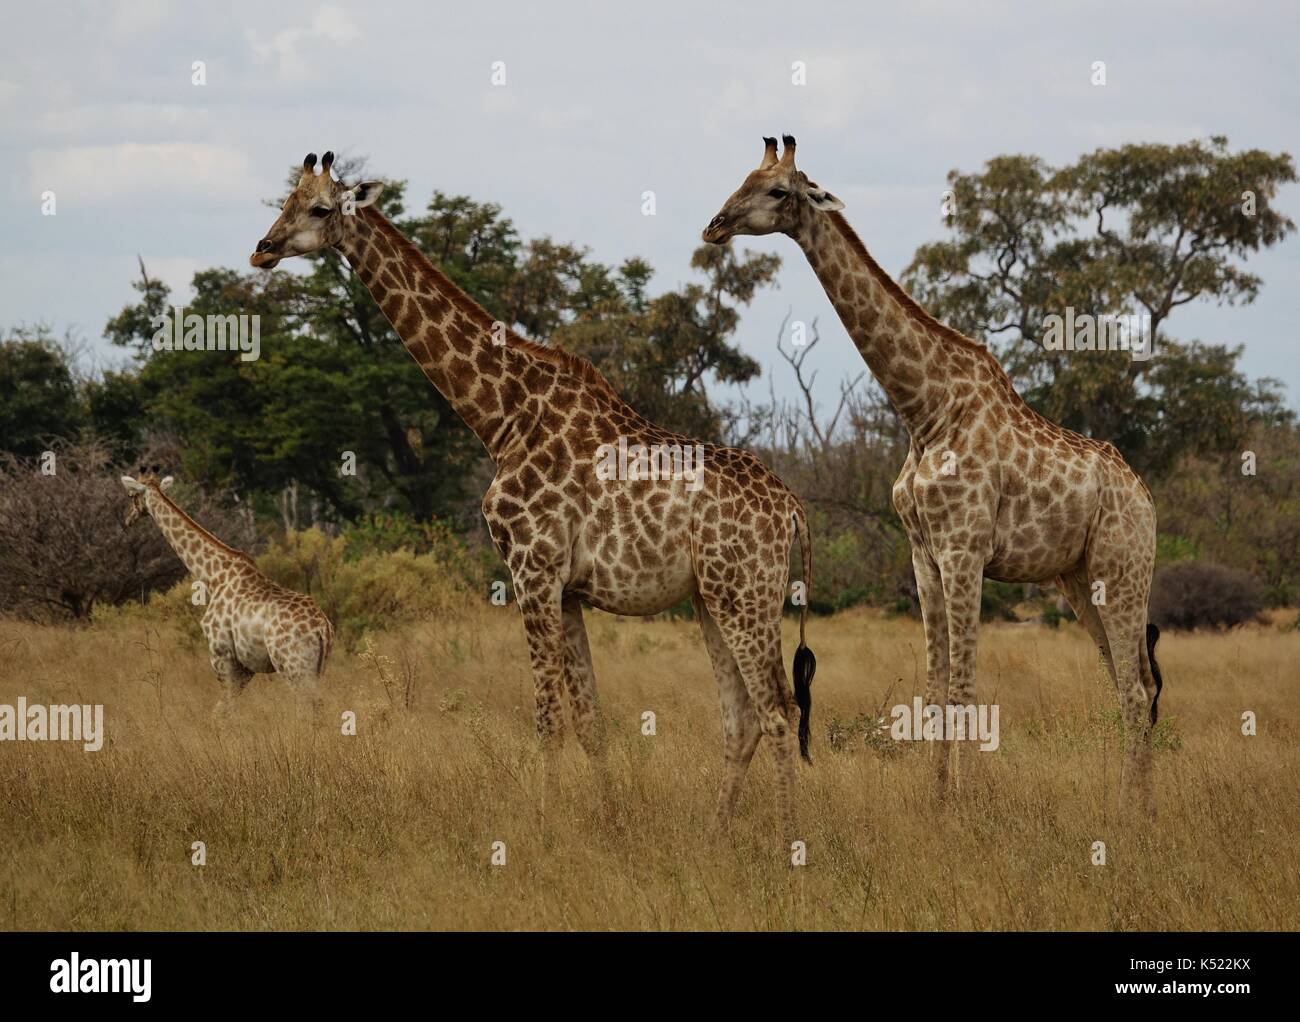 Three Giraffe standing Stock Photo